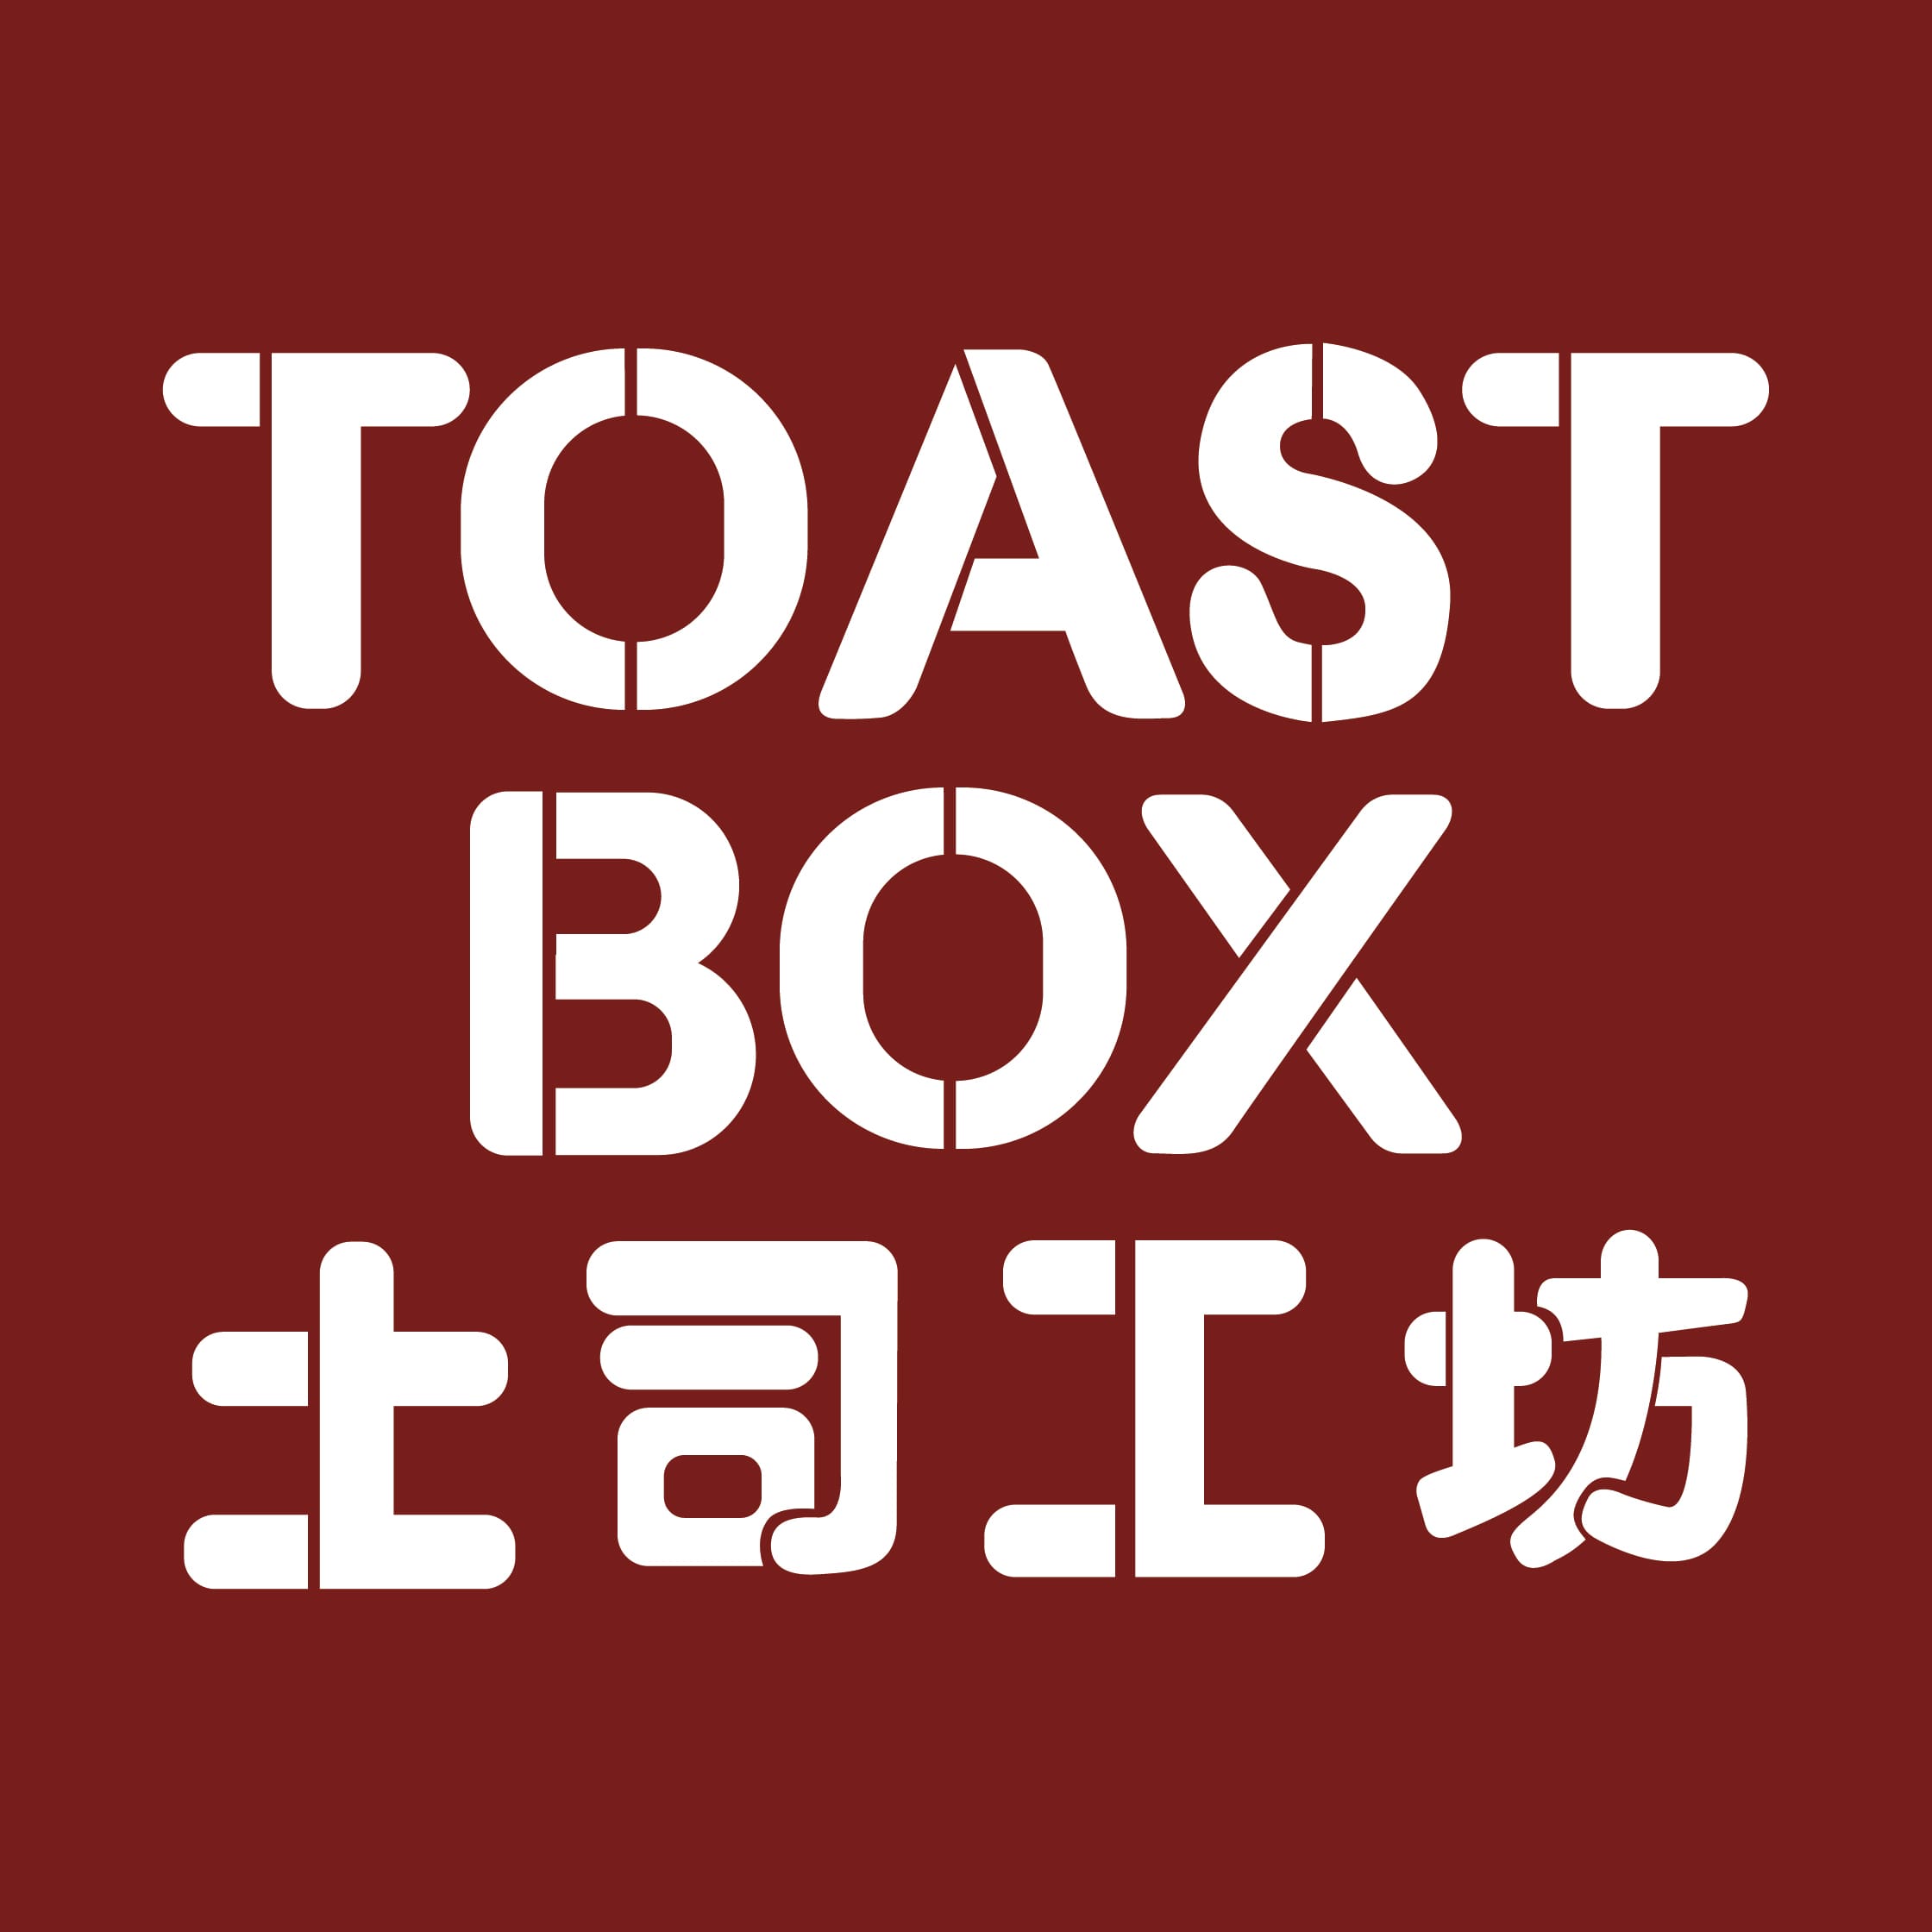 Toast Box Logo